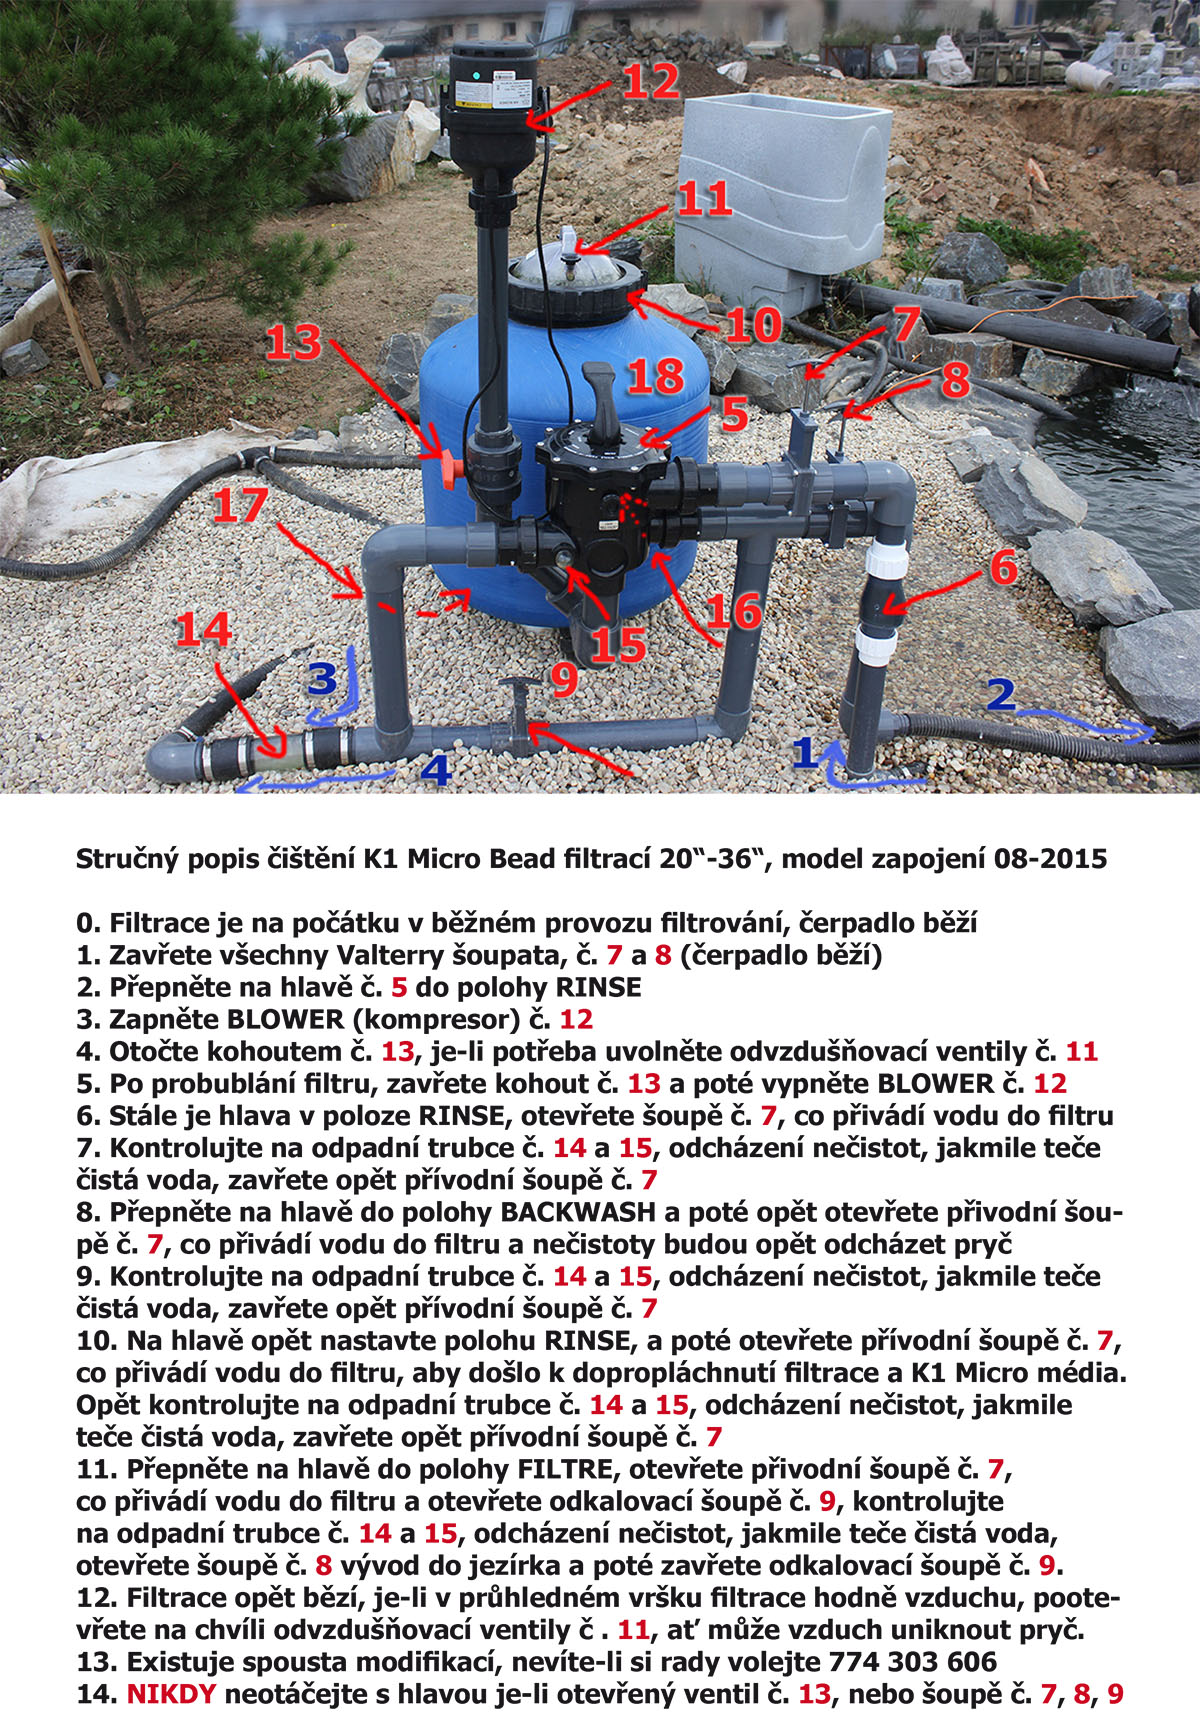 Čištění K1 Micro Bead základní verze, Cleaning K1 Micro Bead Filtration, Basic rules 